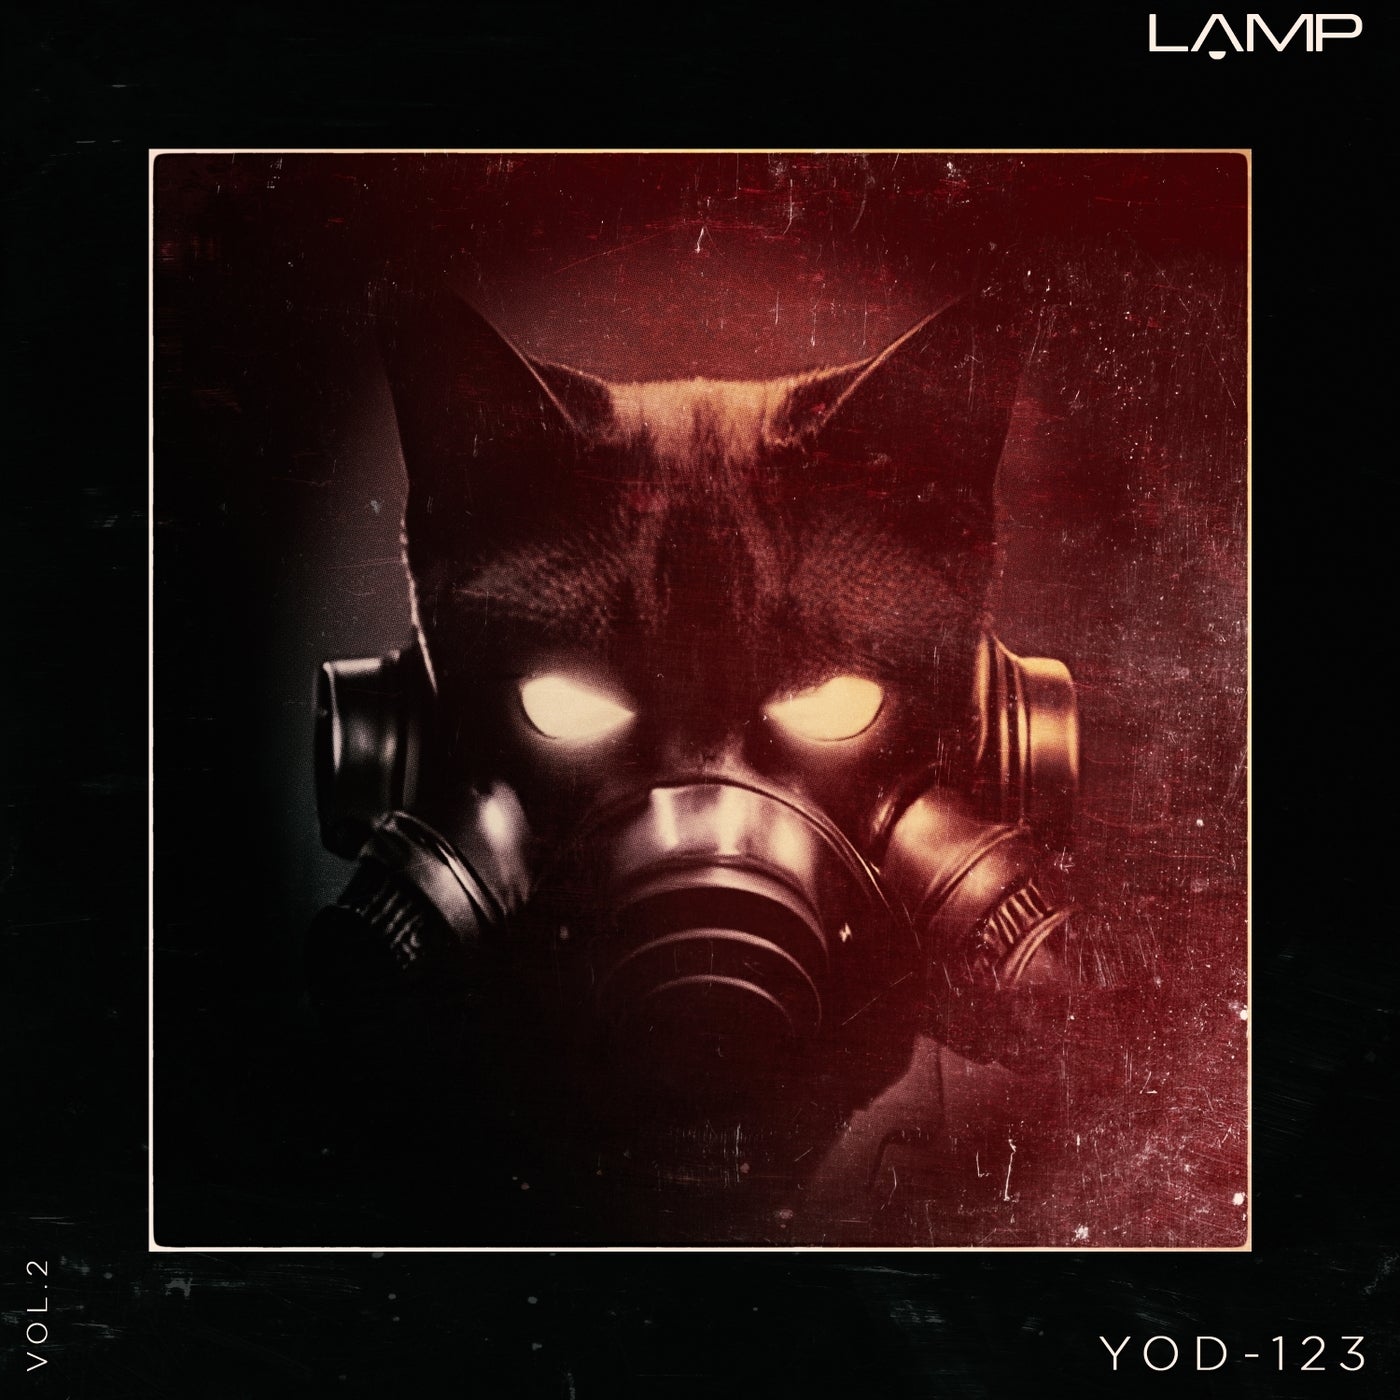 Yod-123, Vol. 2